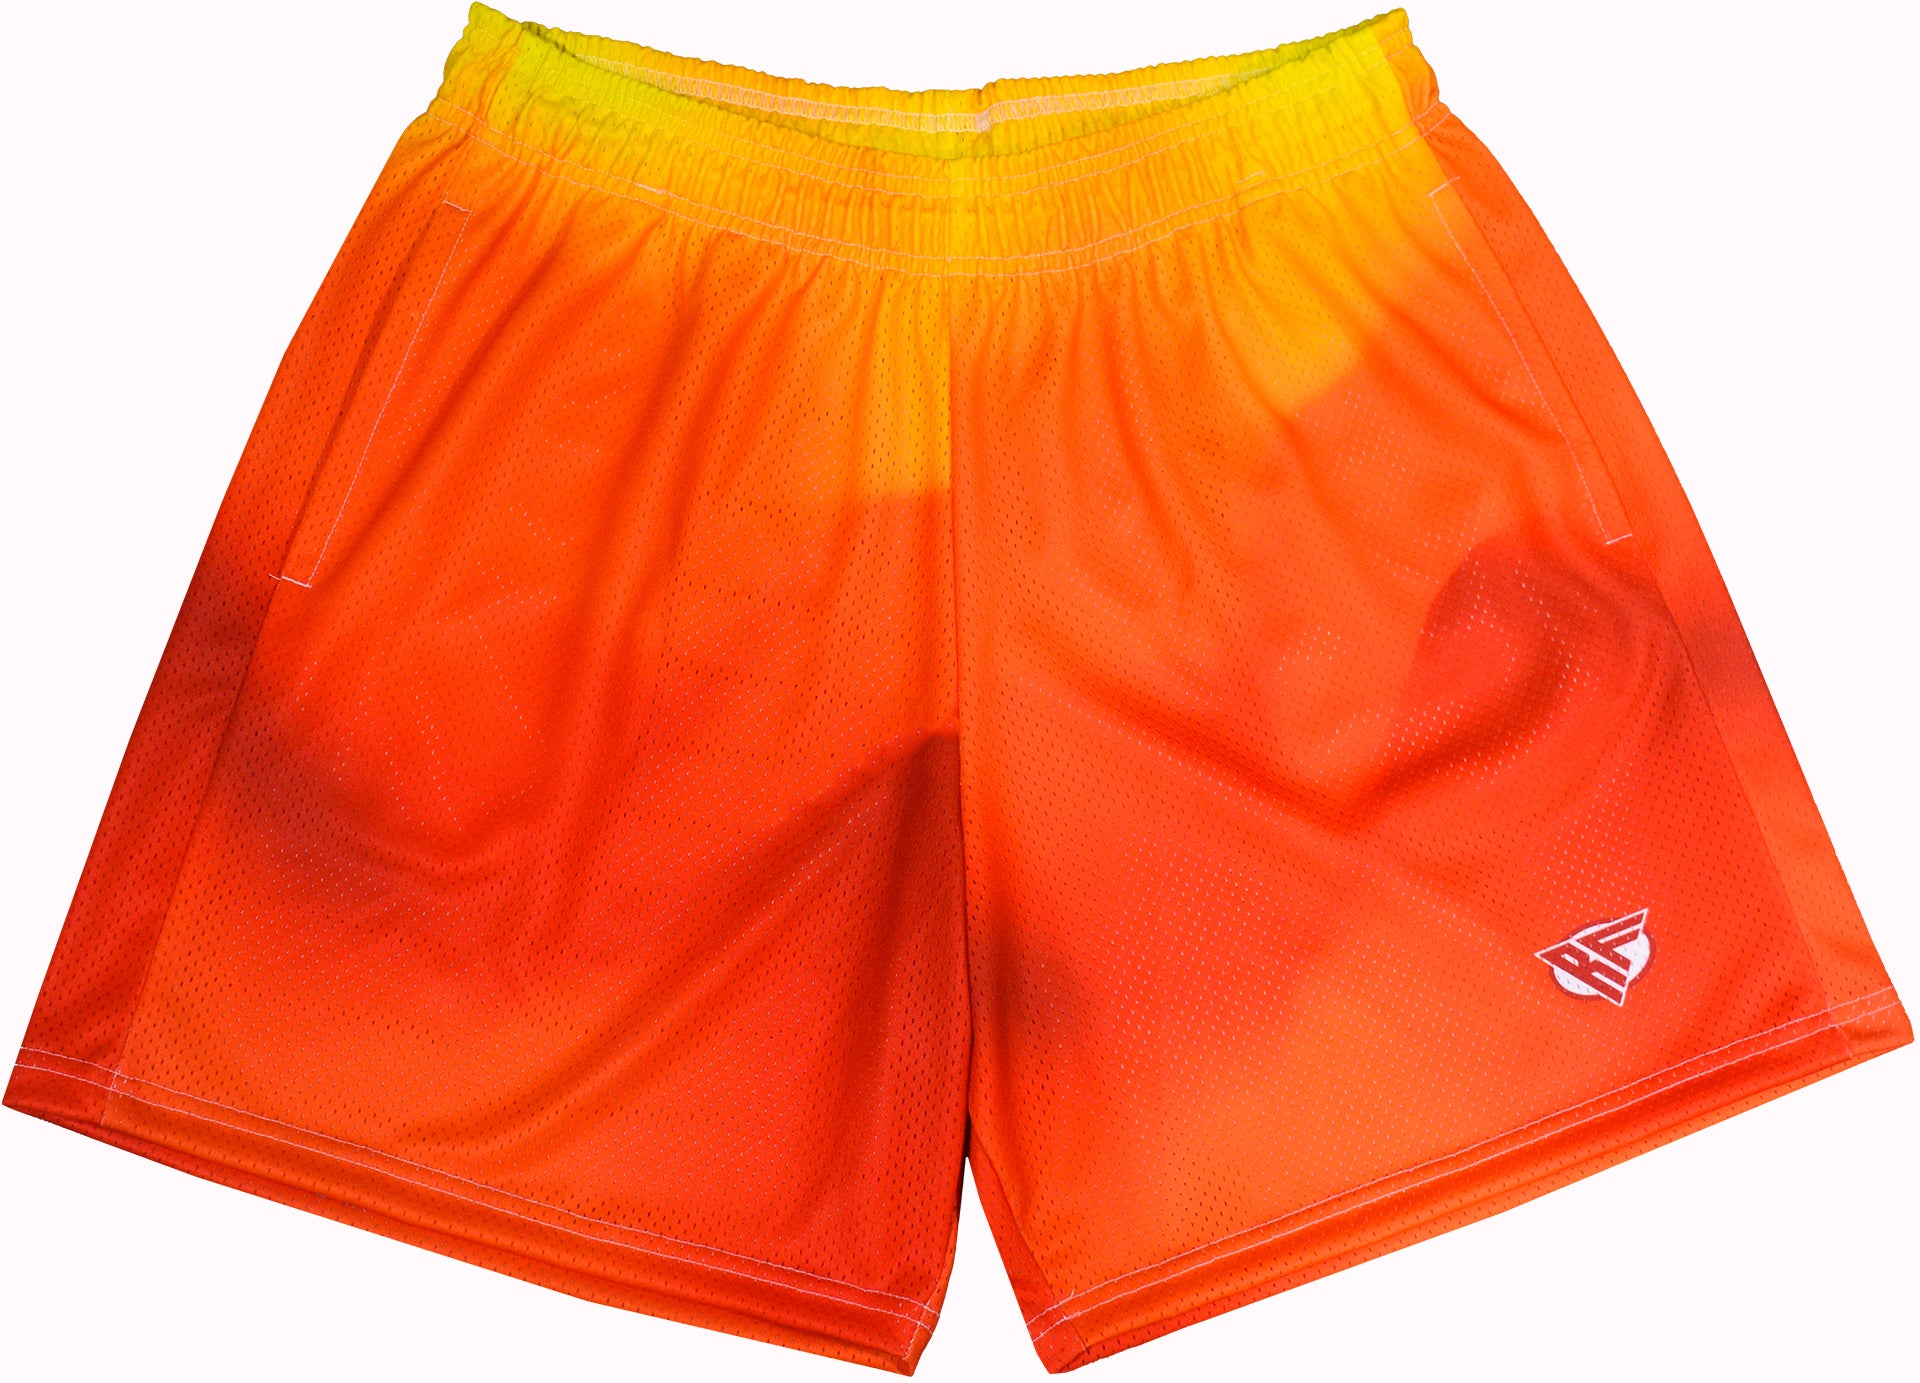 RF Mesh Gradient Shorts - Orange/Yellow